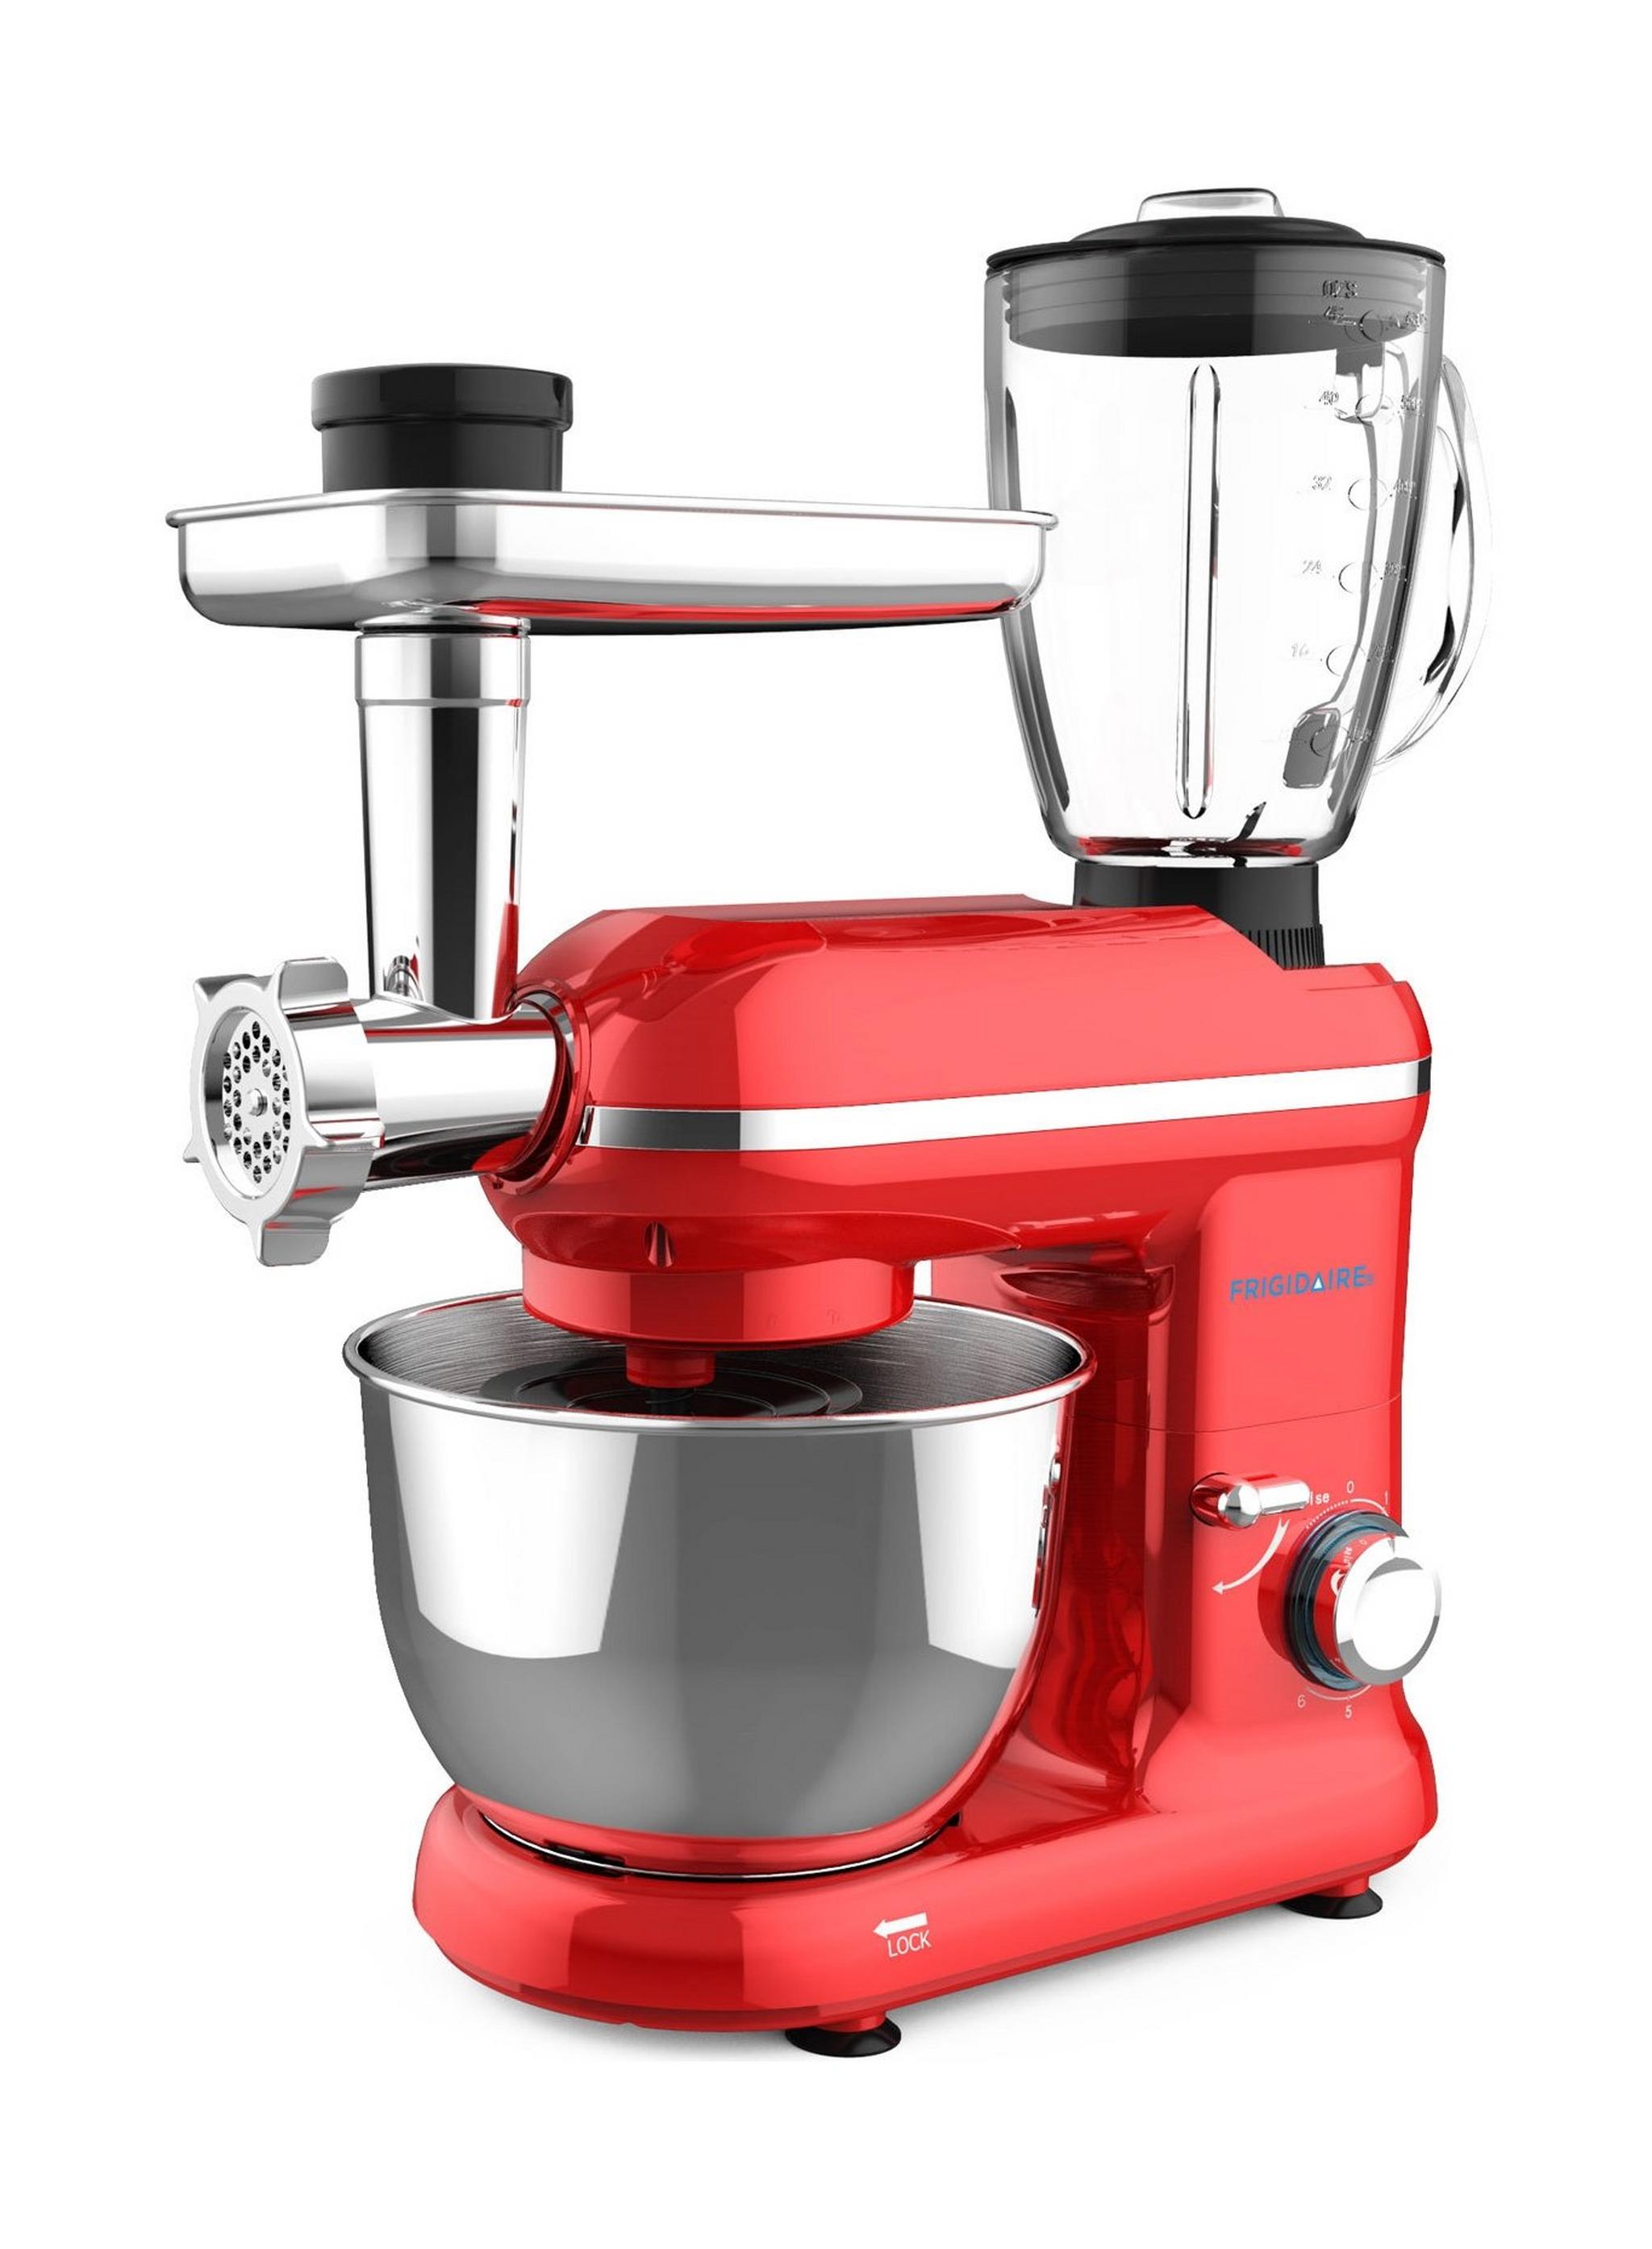 ماكينة المطبخ فريجيدير مع خلاط ومفرمة لحم، 900 واط ، 1.5 لتر، FD5126 - أحمر